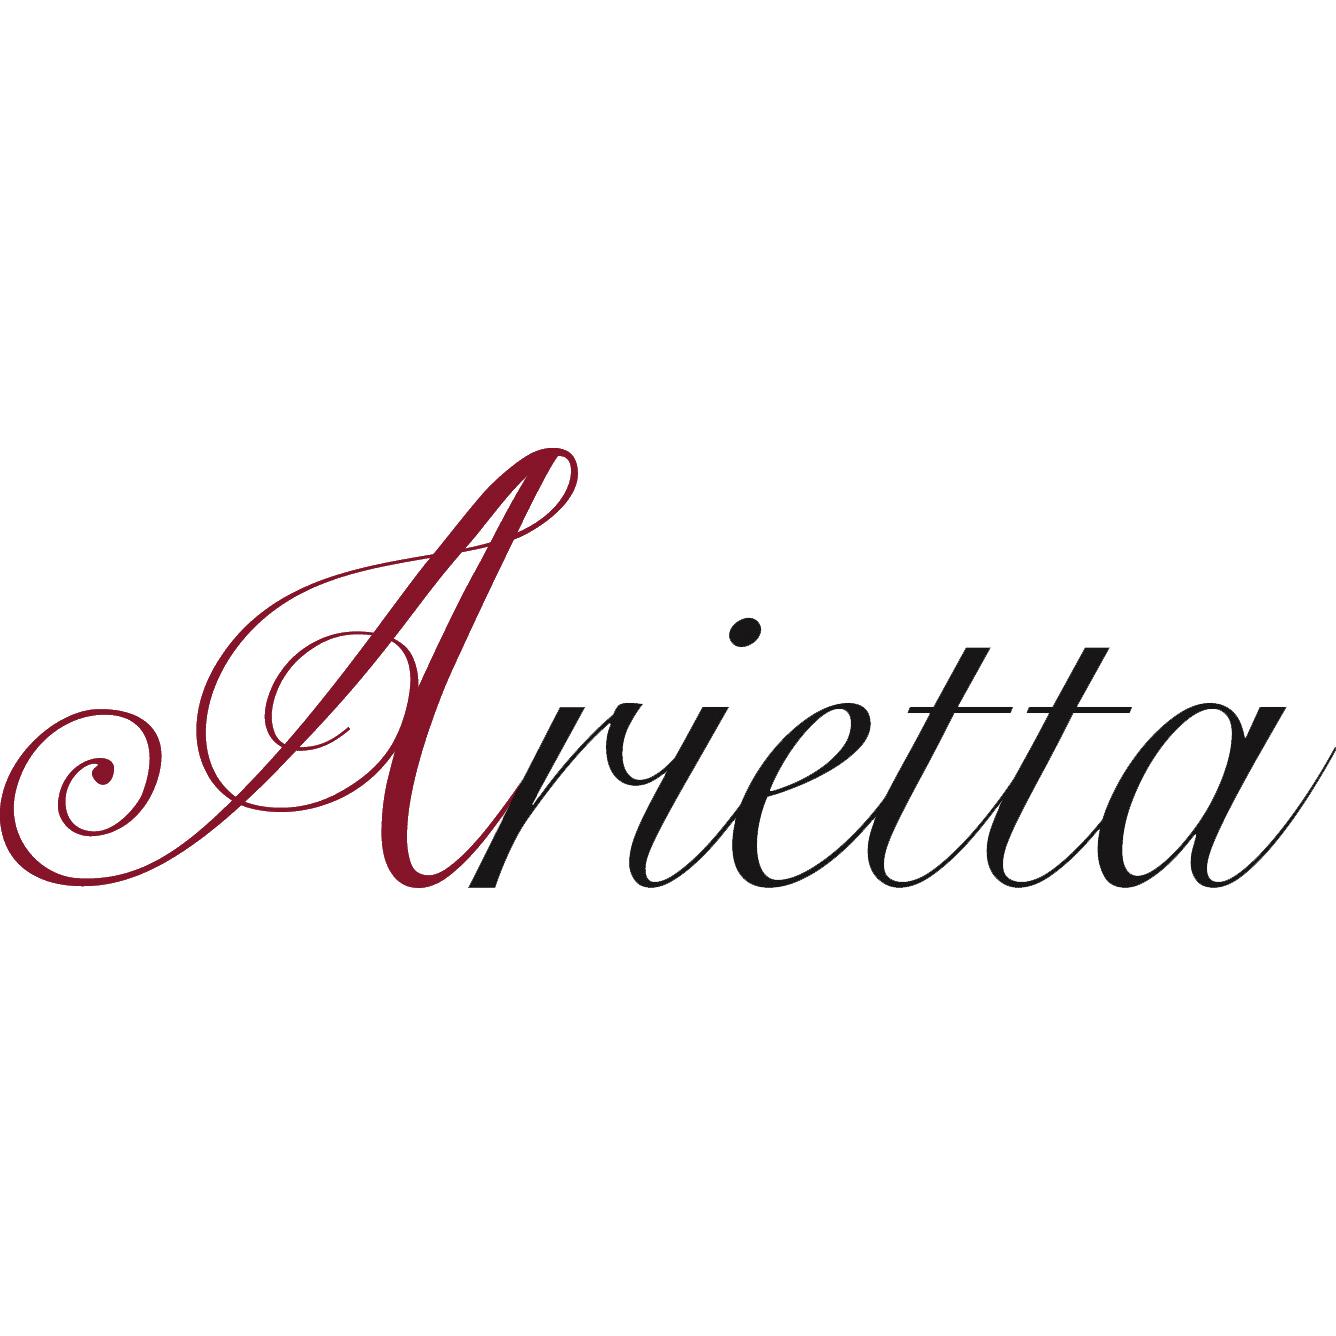 Ensemble Arietta